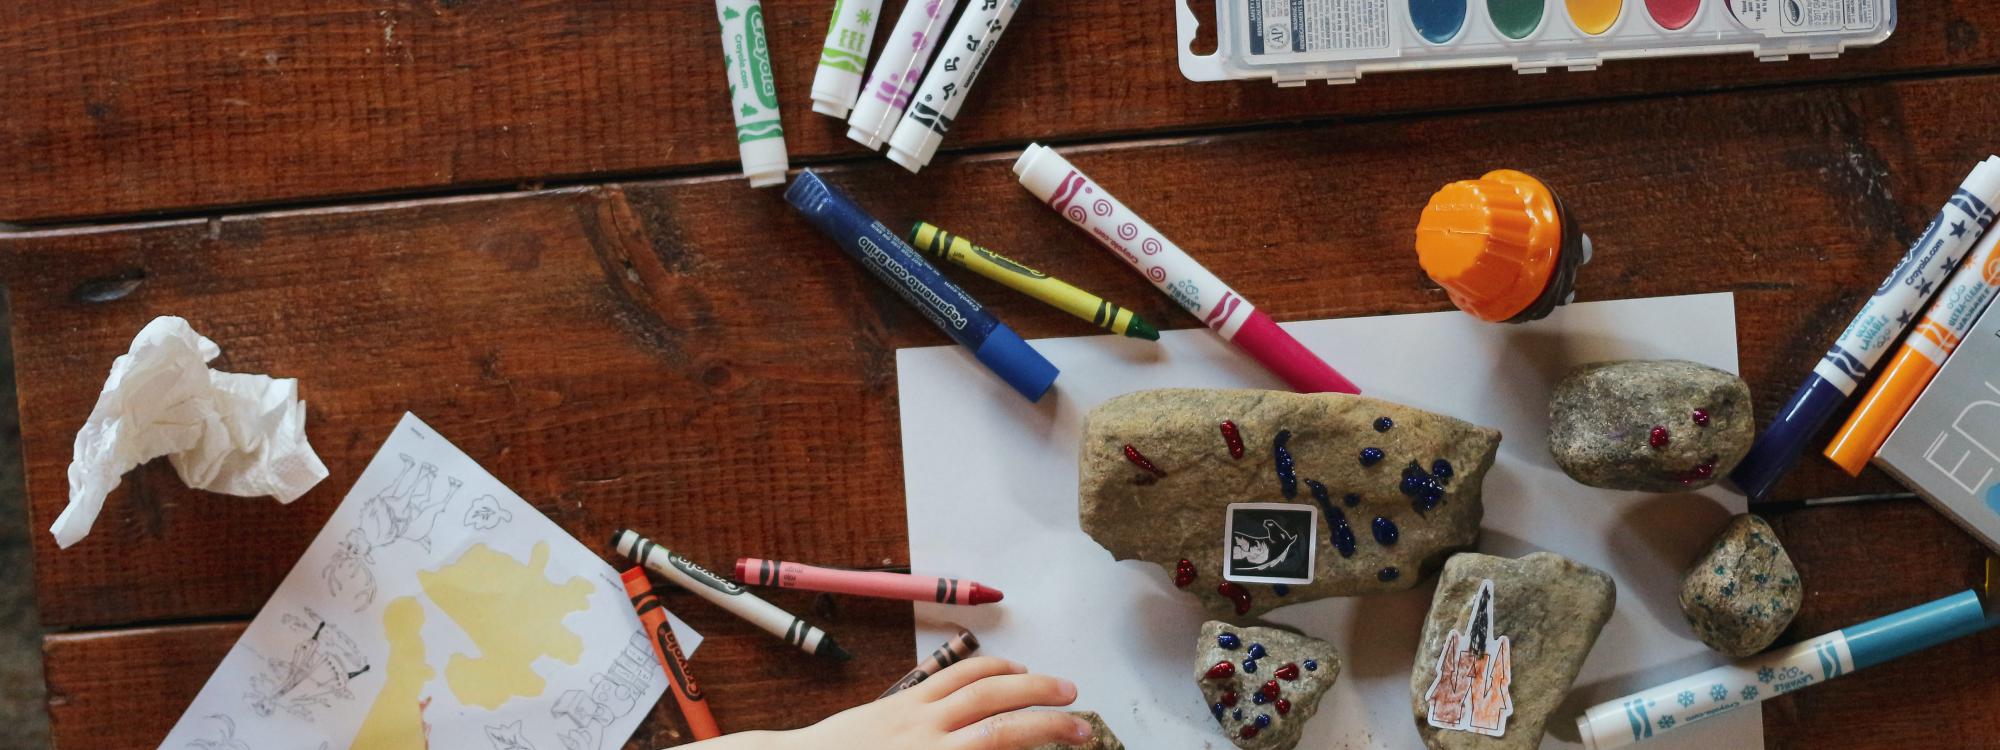 Bastelmaterialien und Stifte mit denen ein Kind am Tisch spielt